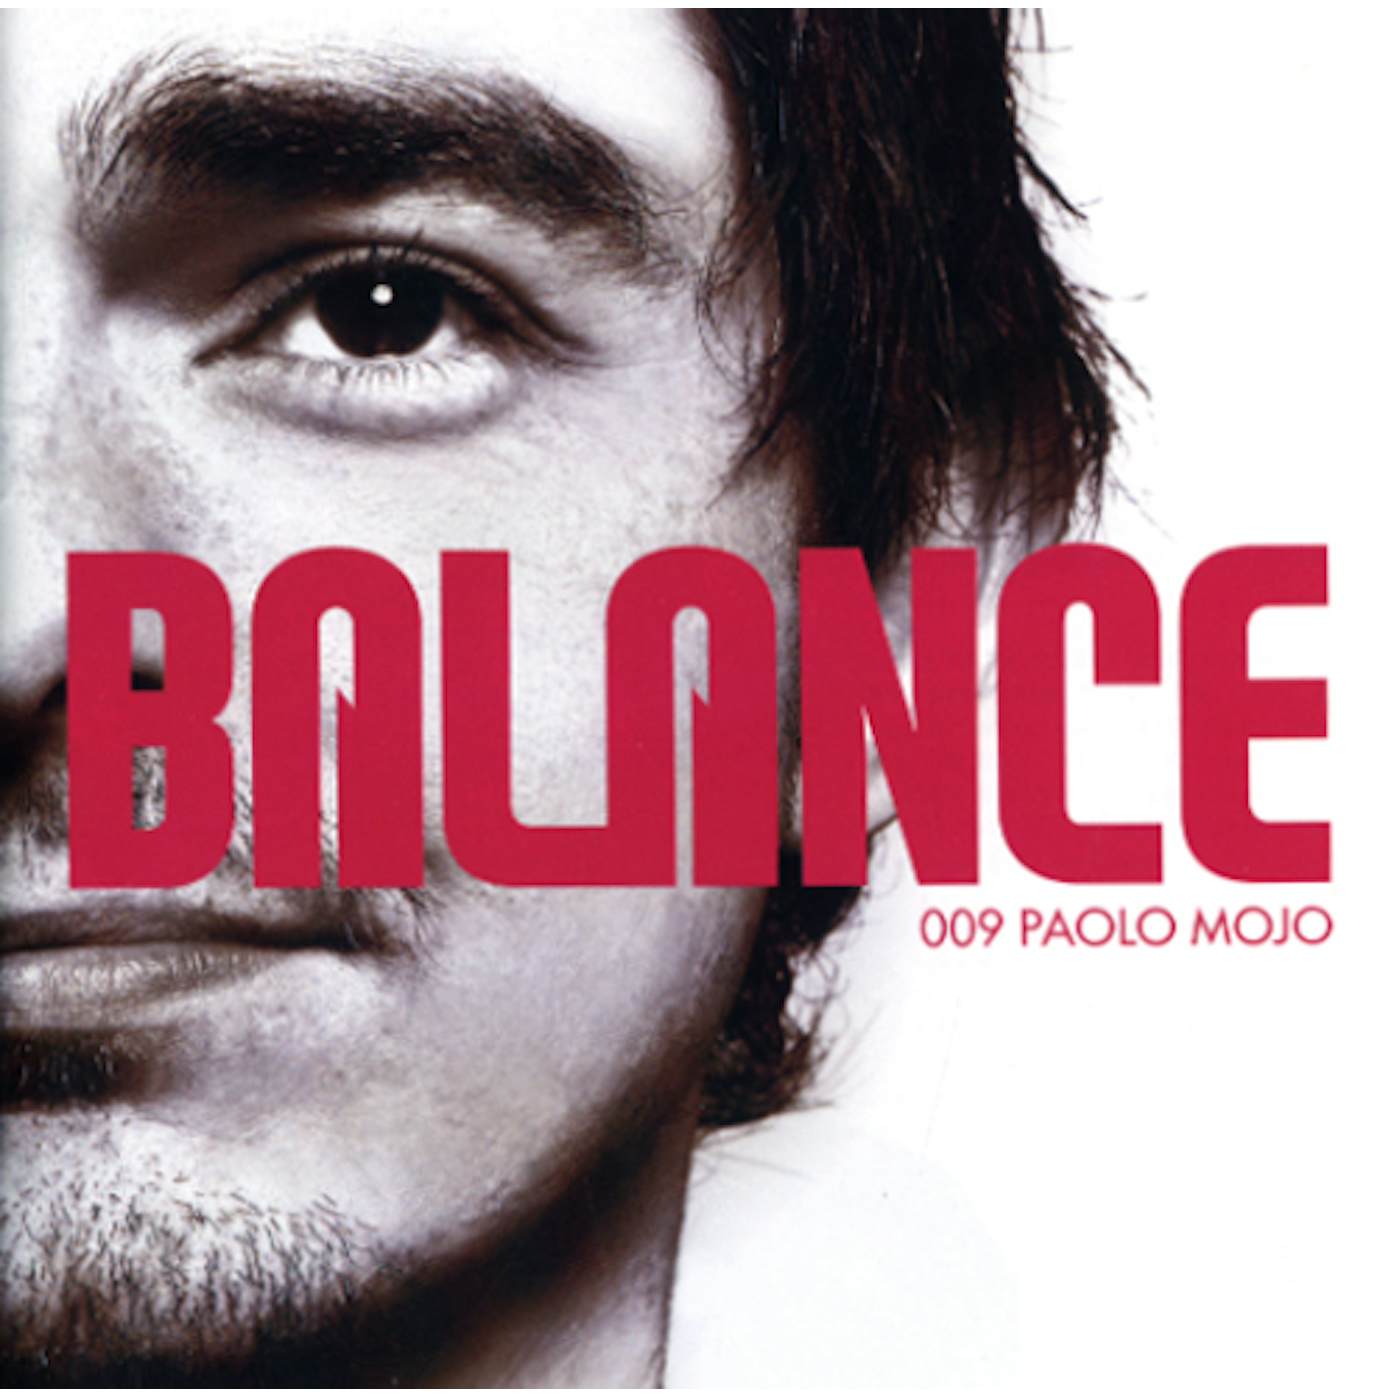 Paolo Mojo BALANCE 009 CD